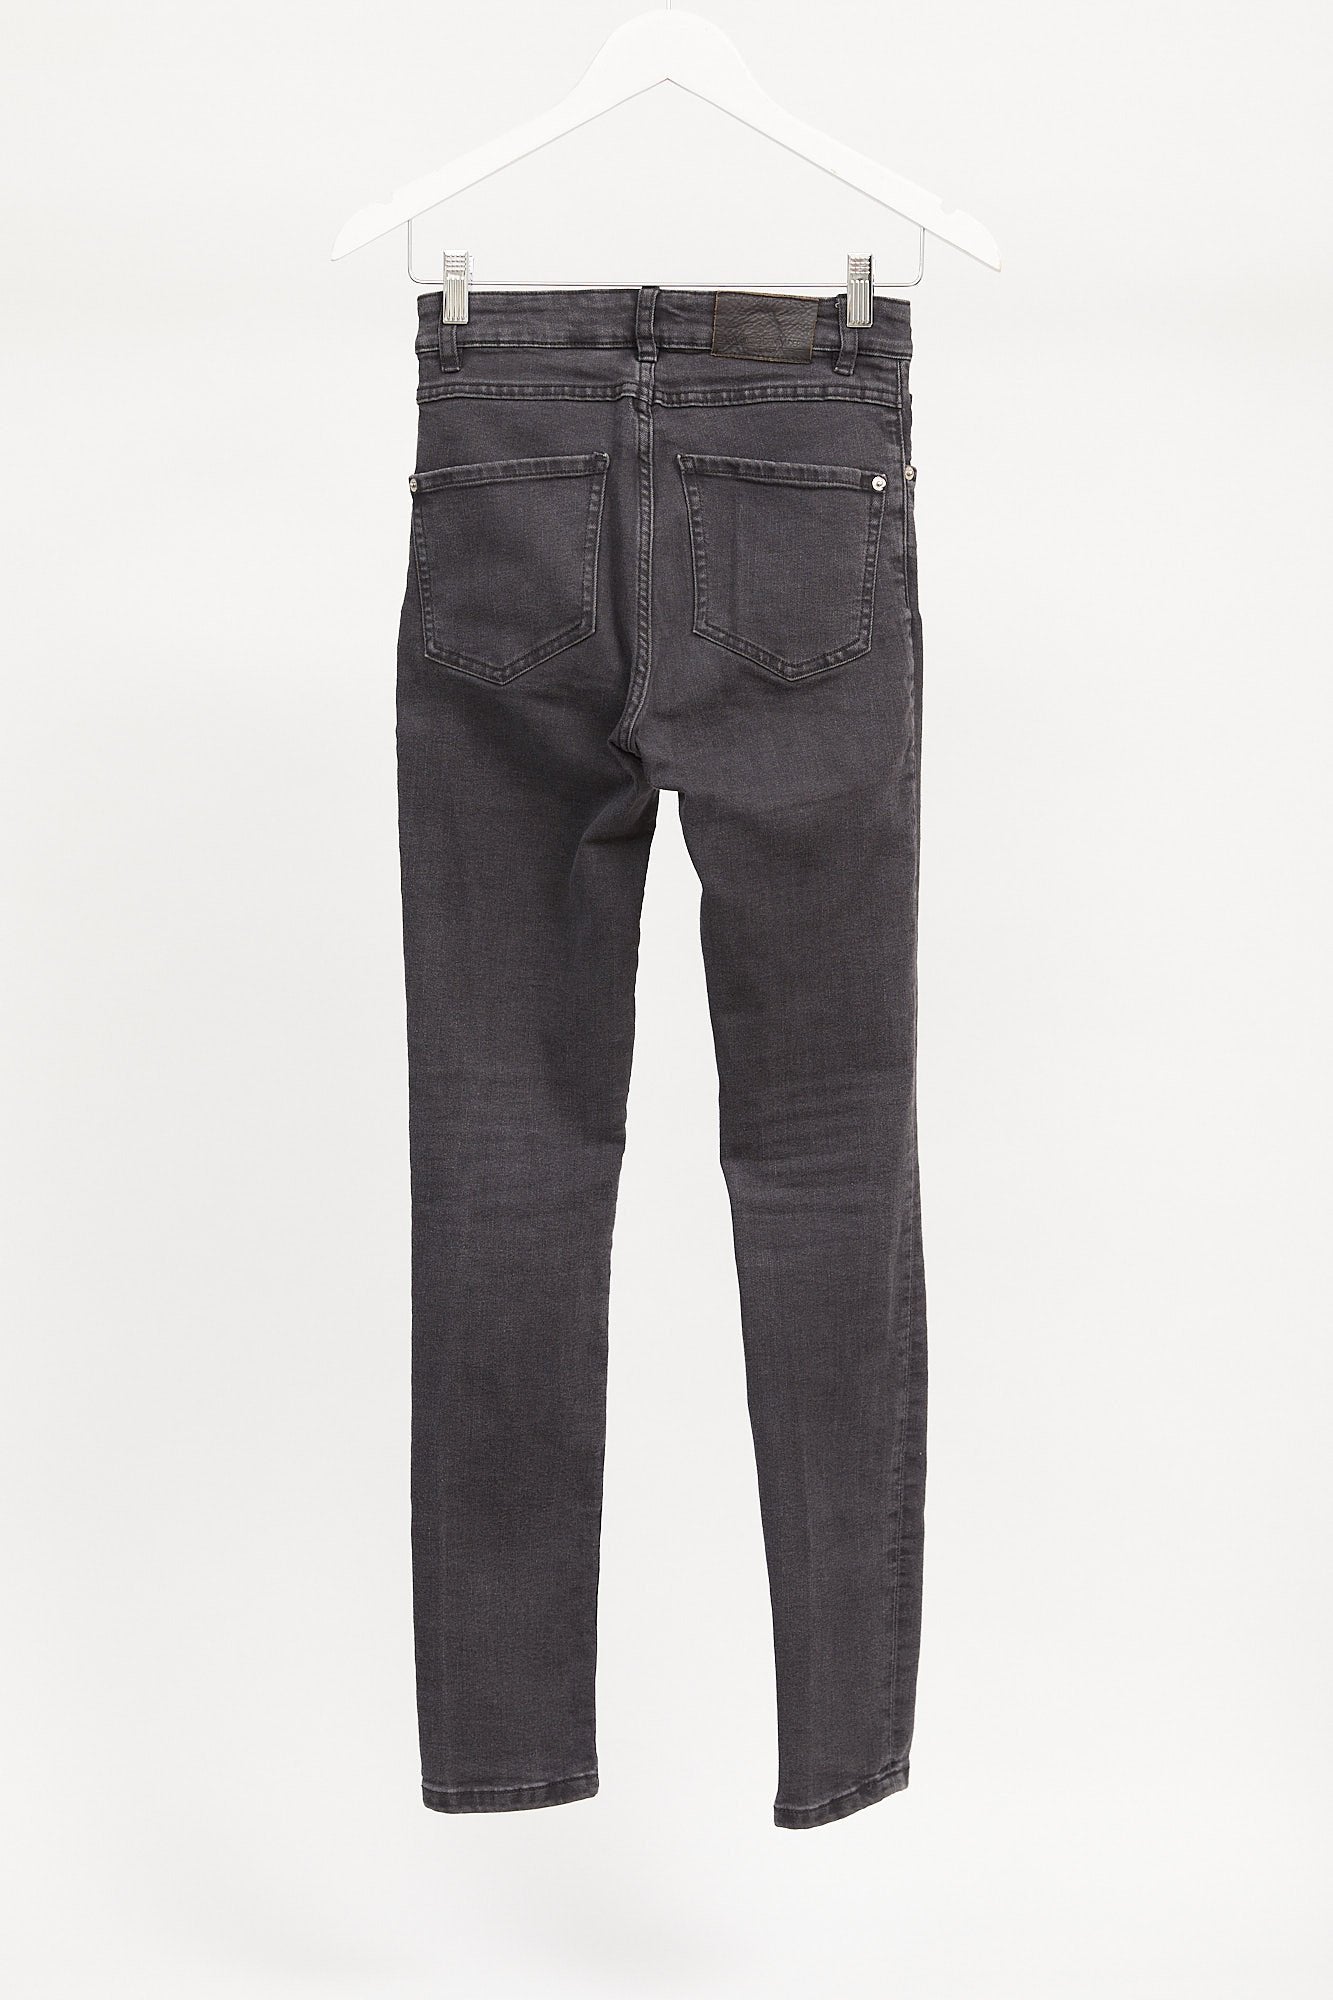 Womens Zara Dark Grey Jeans: Size Small